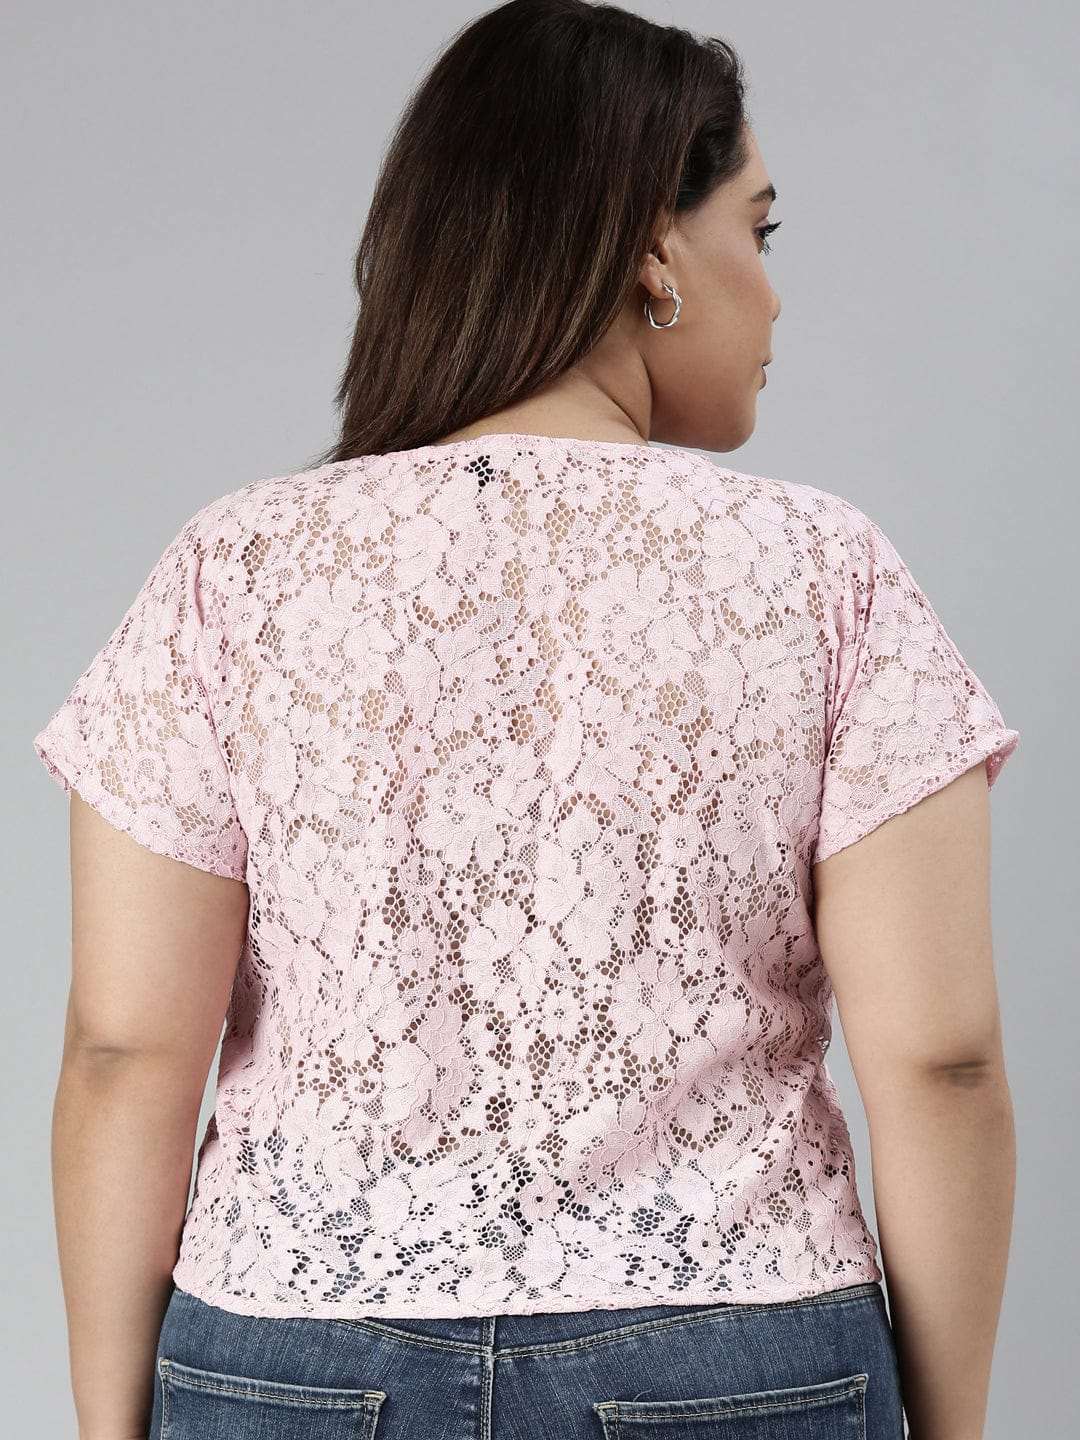 TheShaili - Women's Pink lace crop top